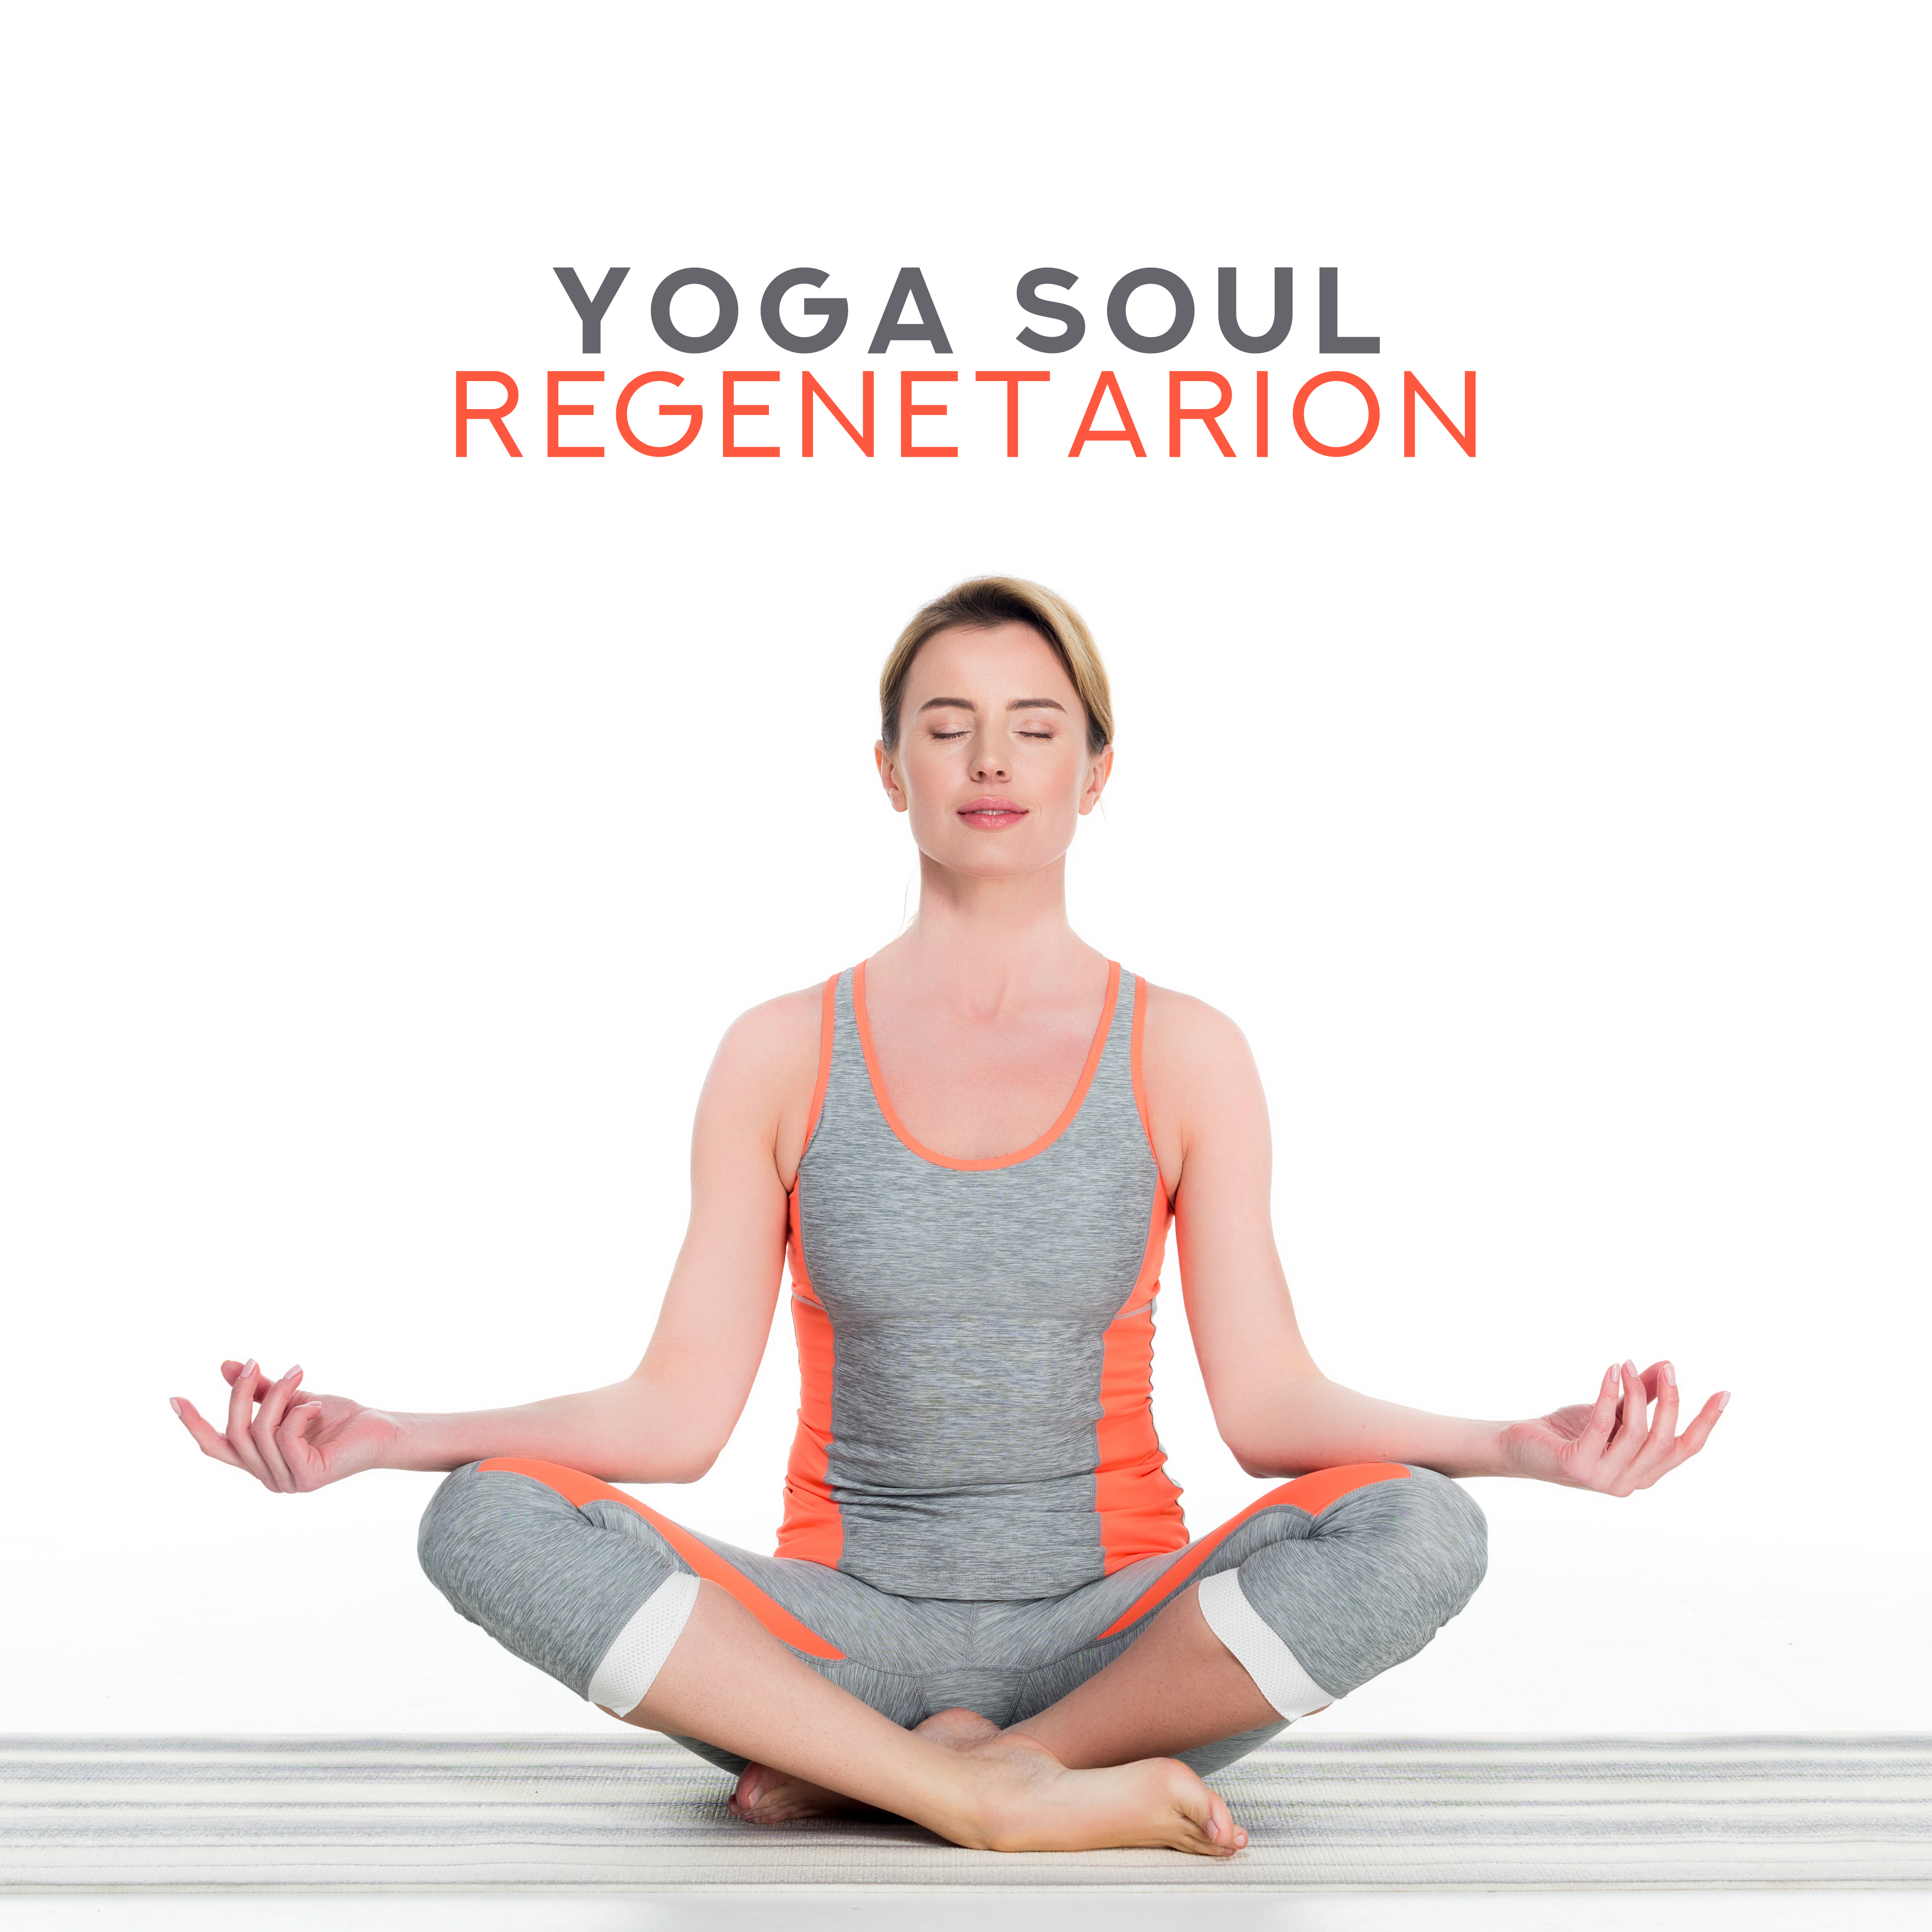 Yoga Soul Regenetarion – New Age Sounds for Meditation